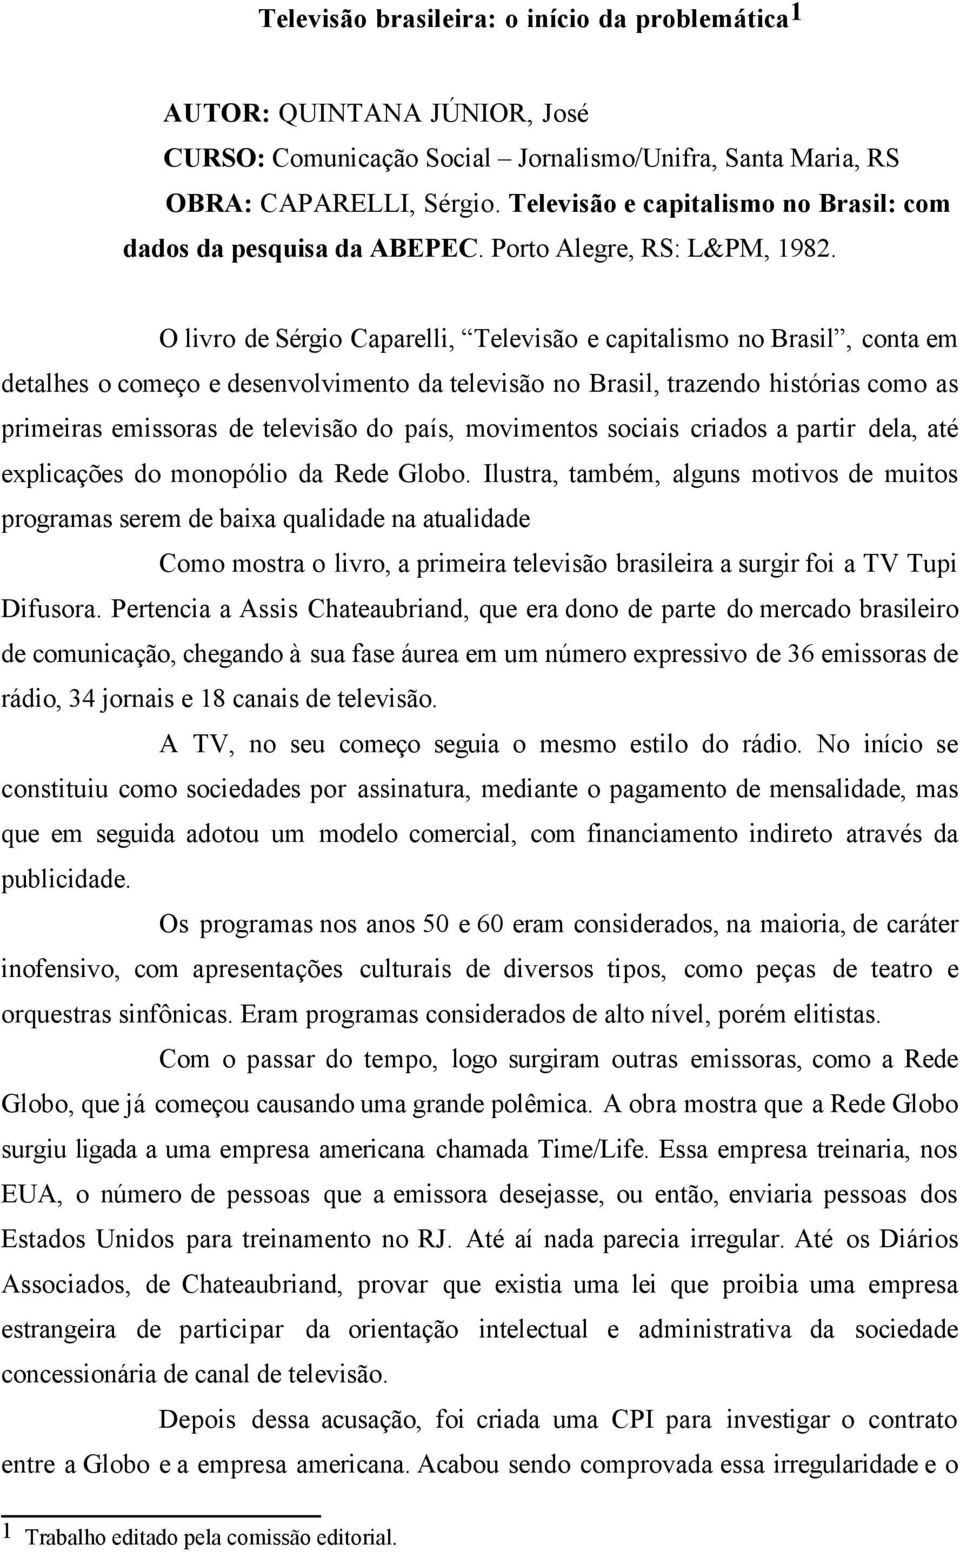 O livro de Sérgio Caparelli, Televisão e capitalismo no Brasil, conta em detalhes o começo e desenvolvimento da televisão no Brasil, trazendo histórias como as primeiras emissoras de televisão do